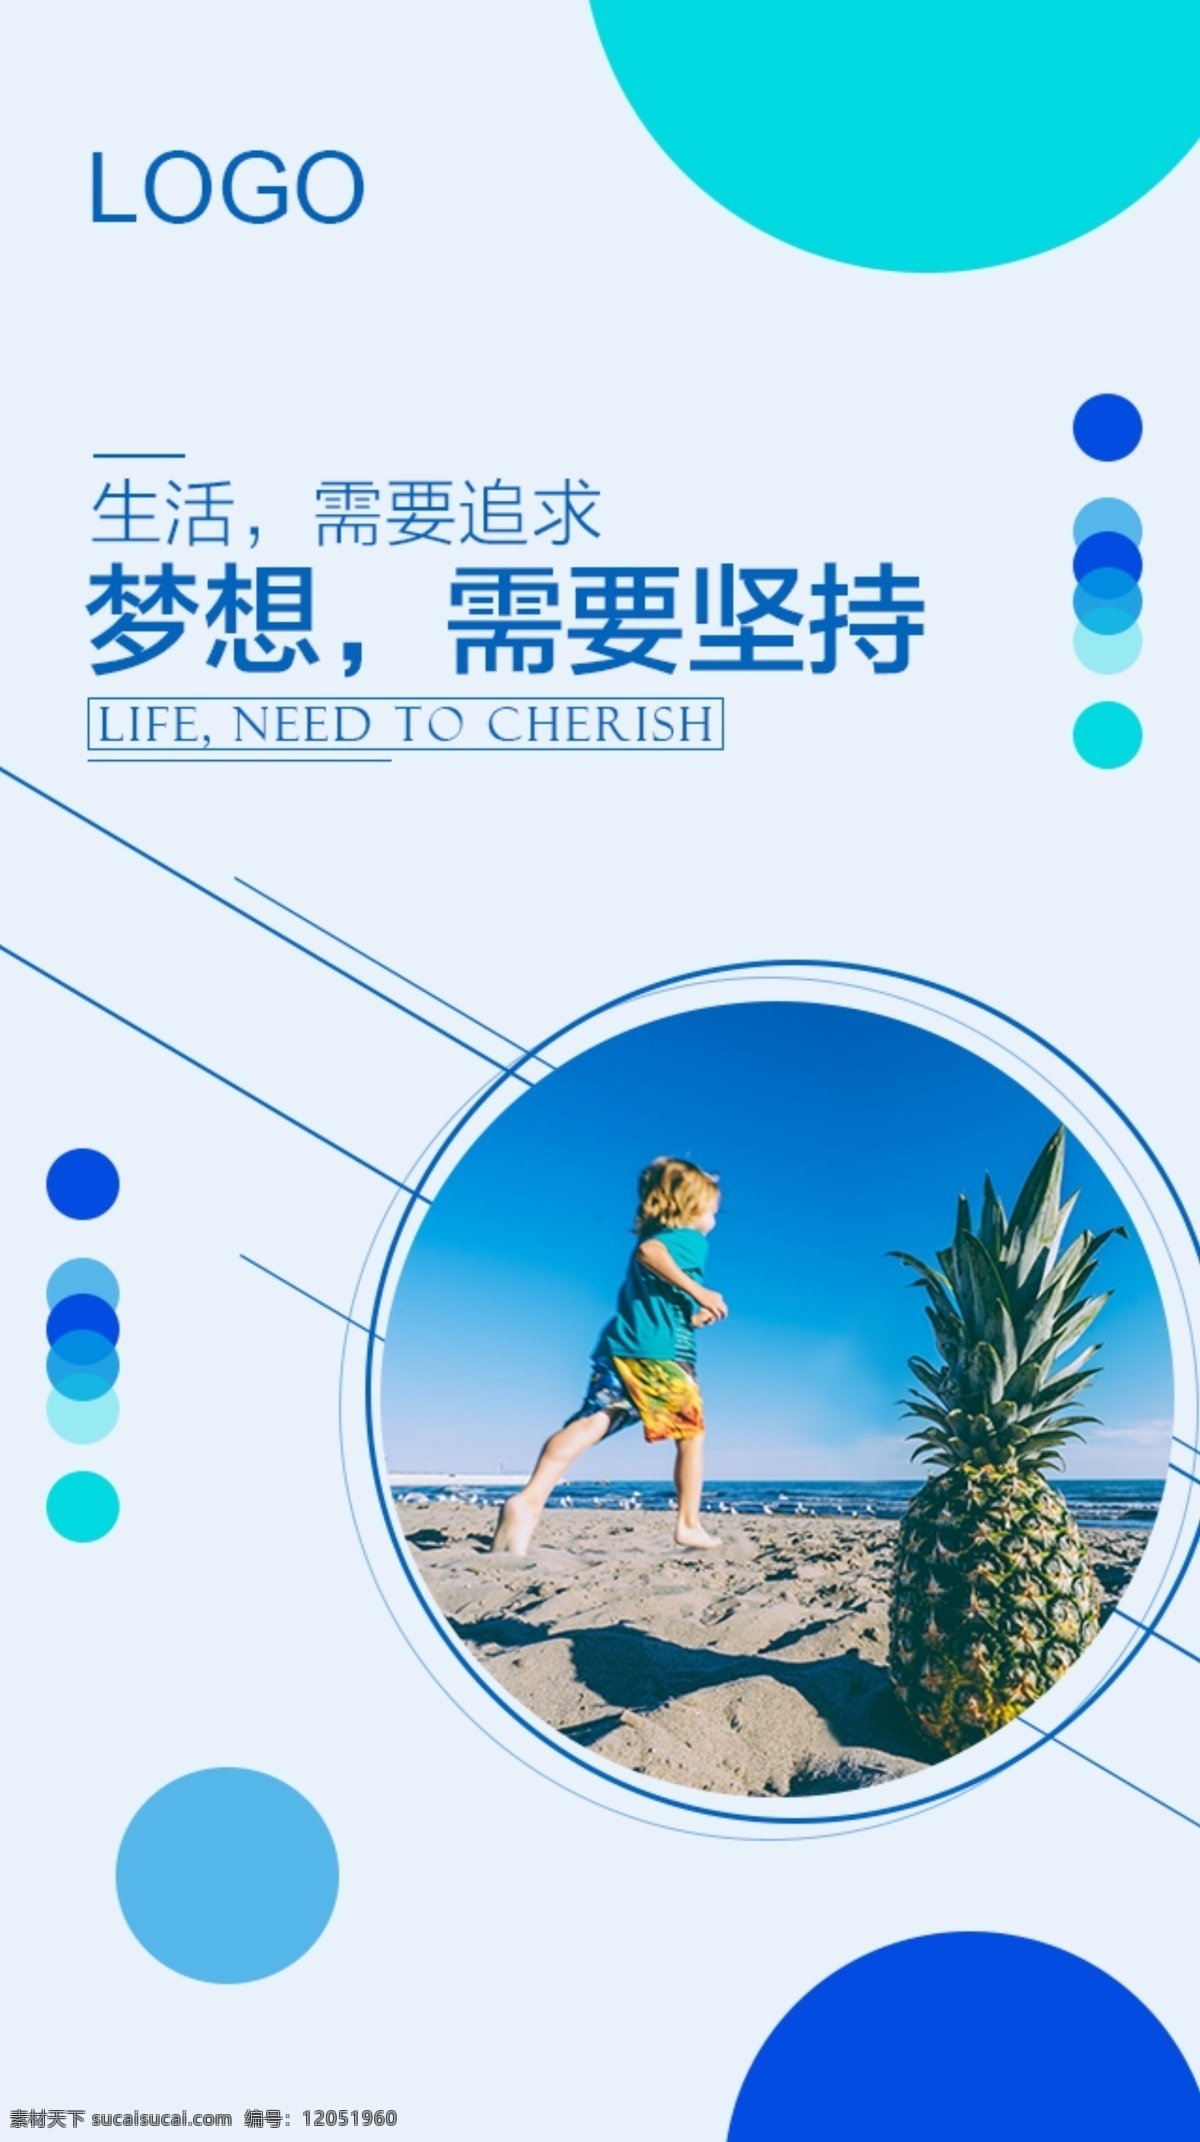 梦想 需要 坚持 励志 正 能量 海报 生活 追求 生命 正能量 企业文化 蓝色 沙滩 海边 菠萝 小孩